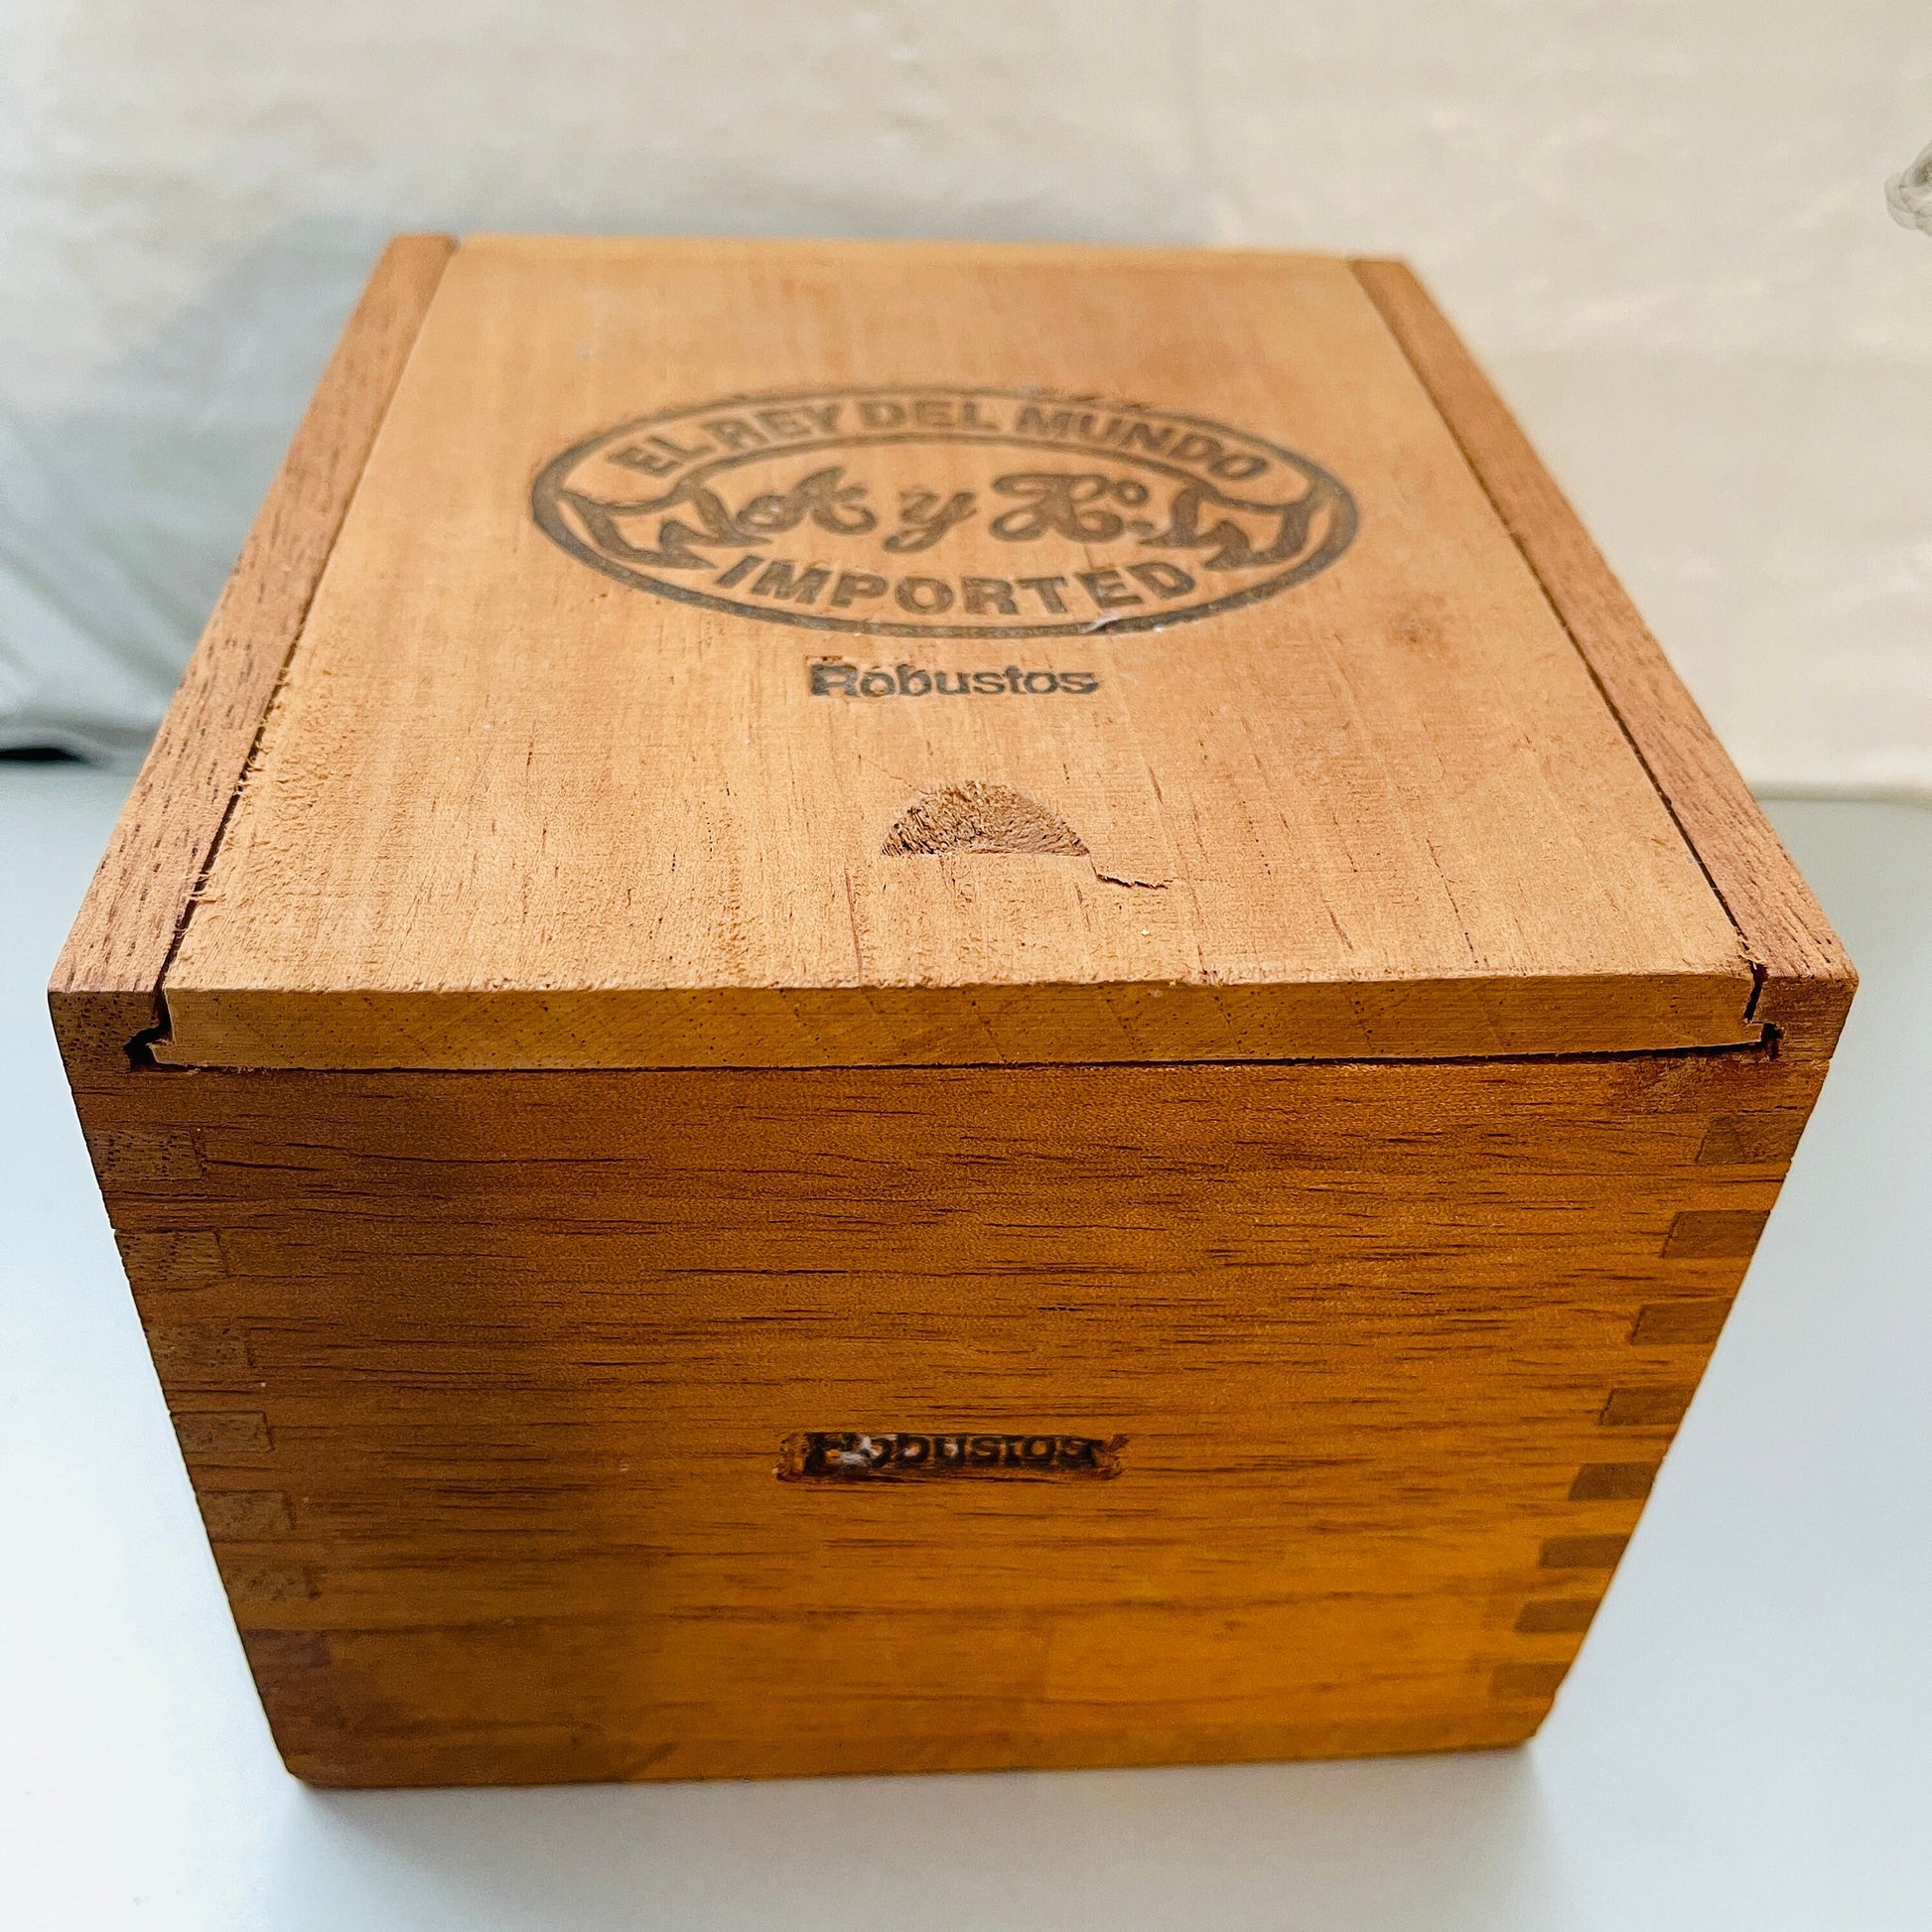 El Rey Del Mundo, Robustos, Wooden Cigar Box, Vintage Tobacciana, Collectible*